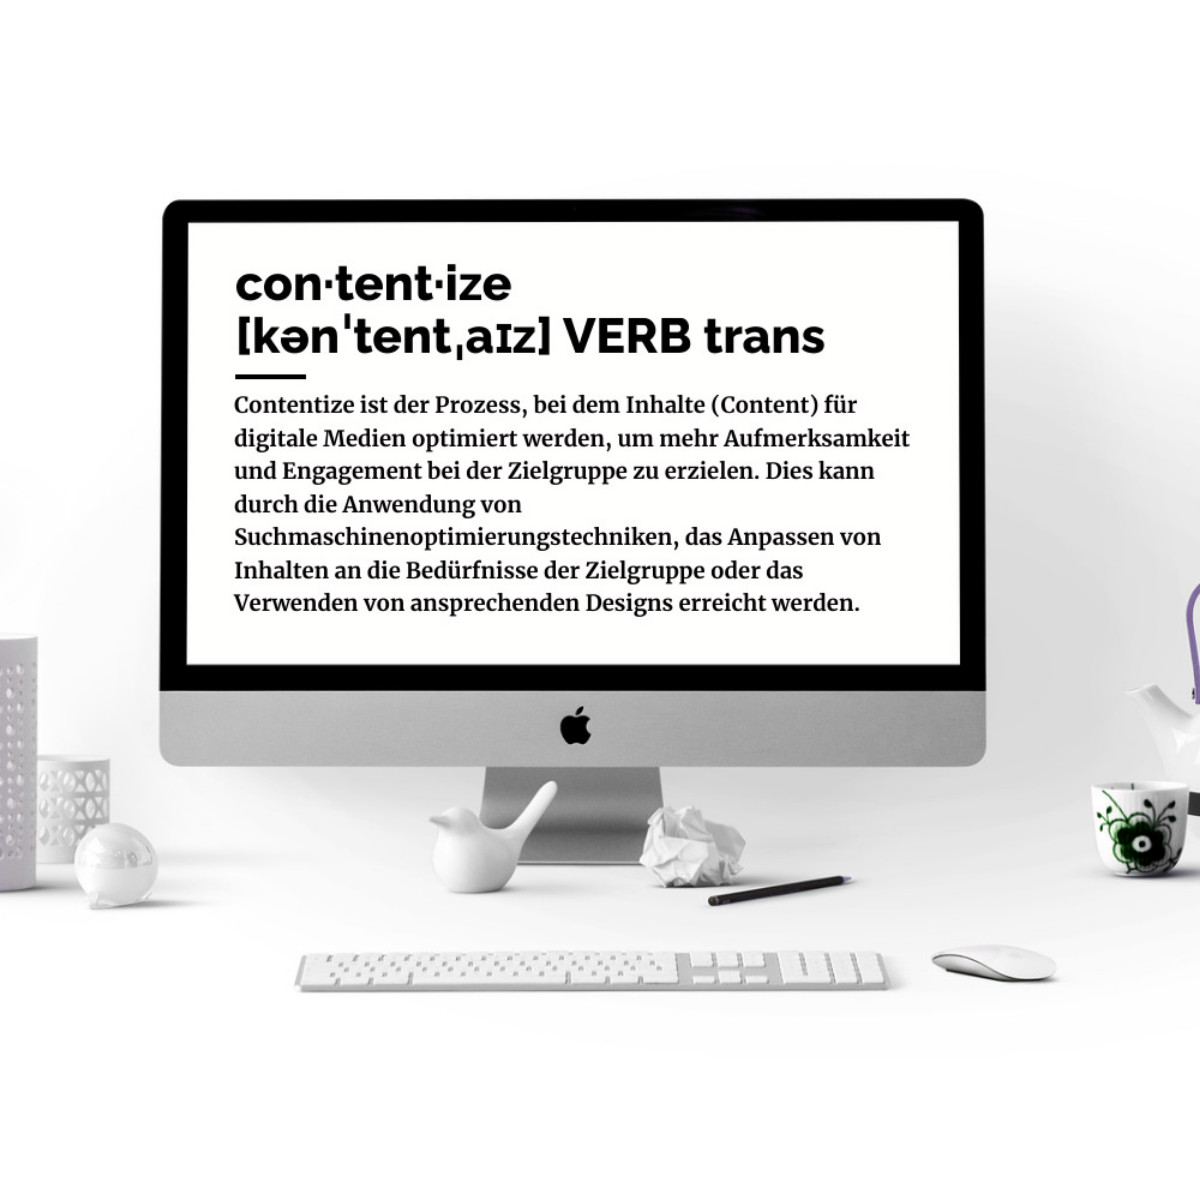 con·tent·ize [kənˈtentˌaɪz] VERB trans Definition: Contentize ist der Prozess, bei dem Inhalte (Content) für digitale Medien optimiert werden